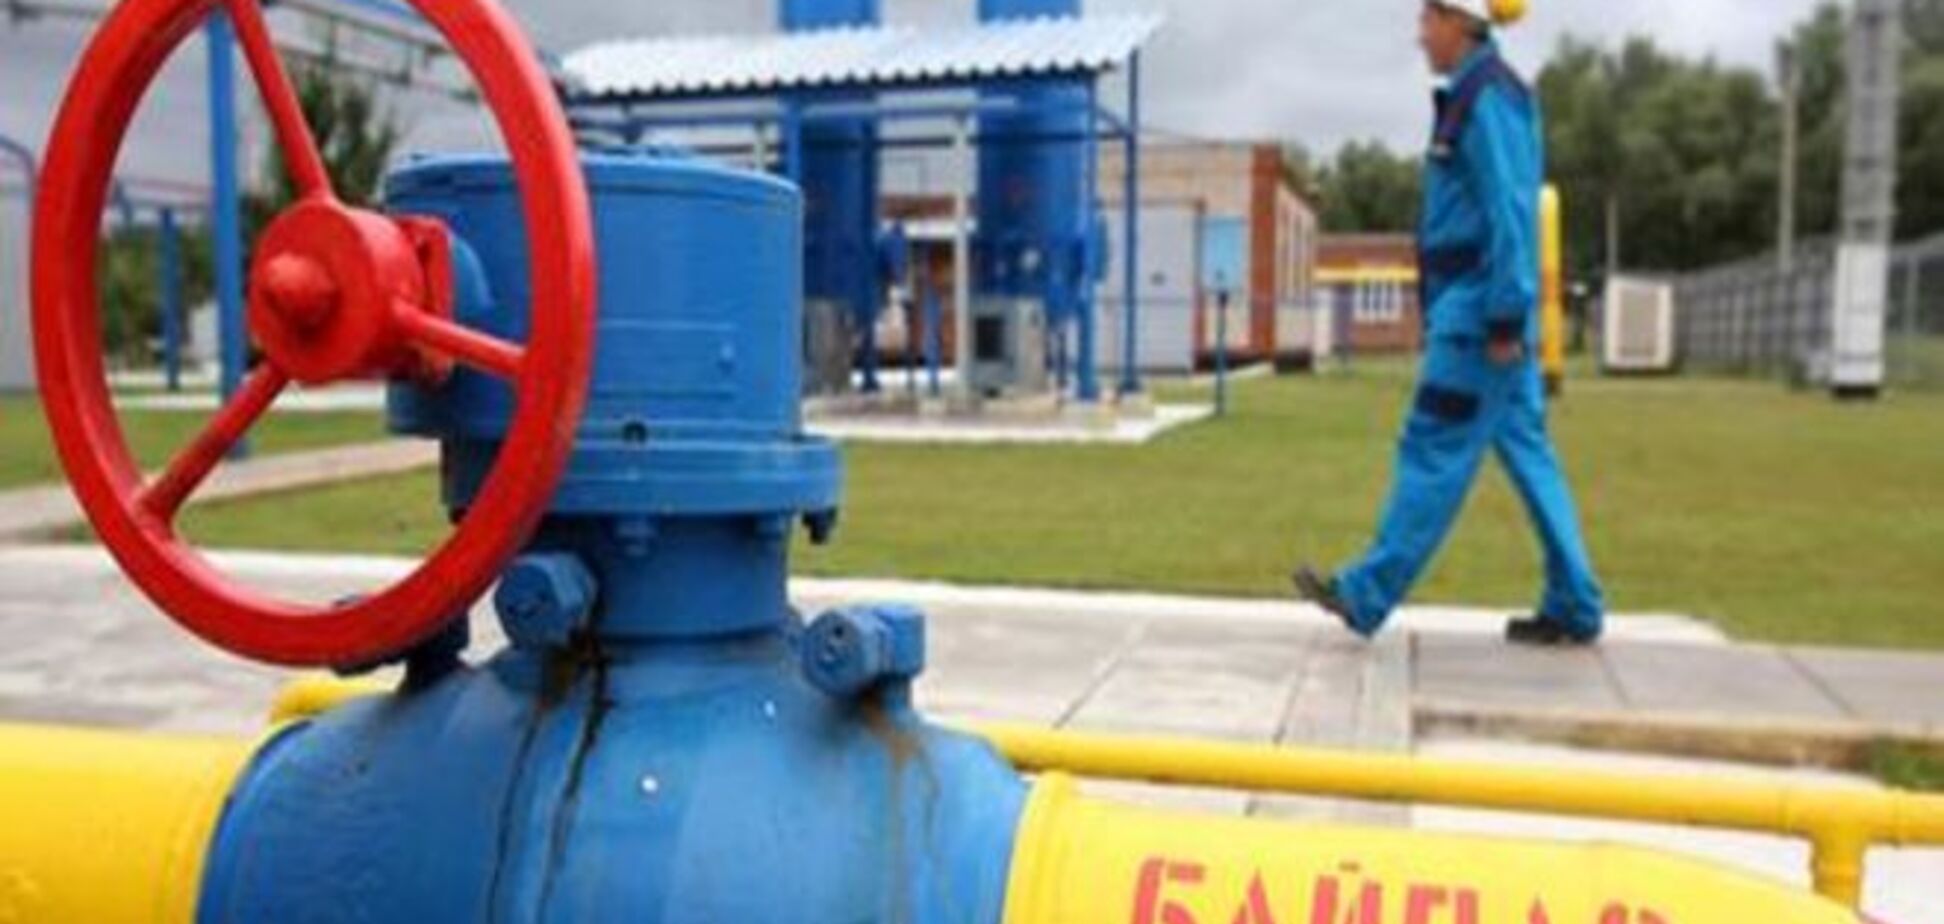 EWI: ЕС серьезно снизил зависимость от транзита газа через Украину